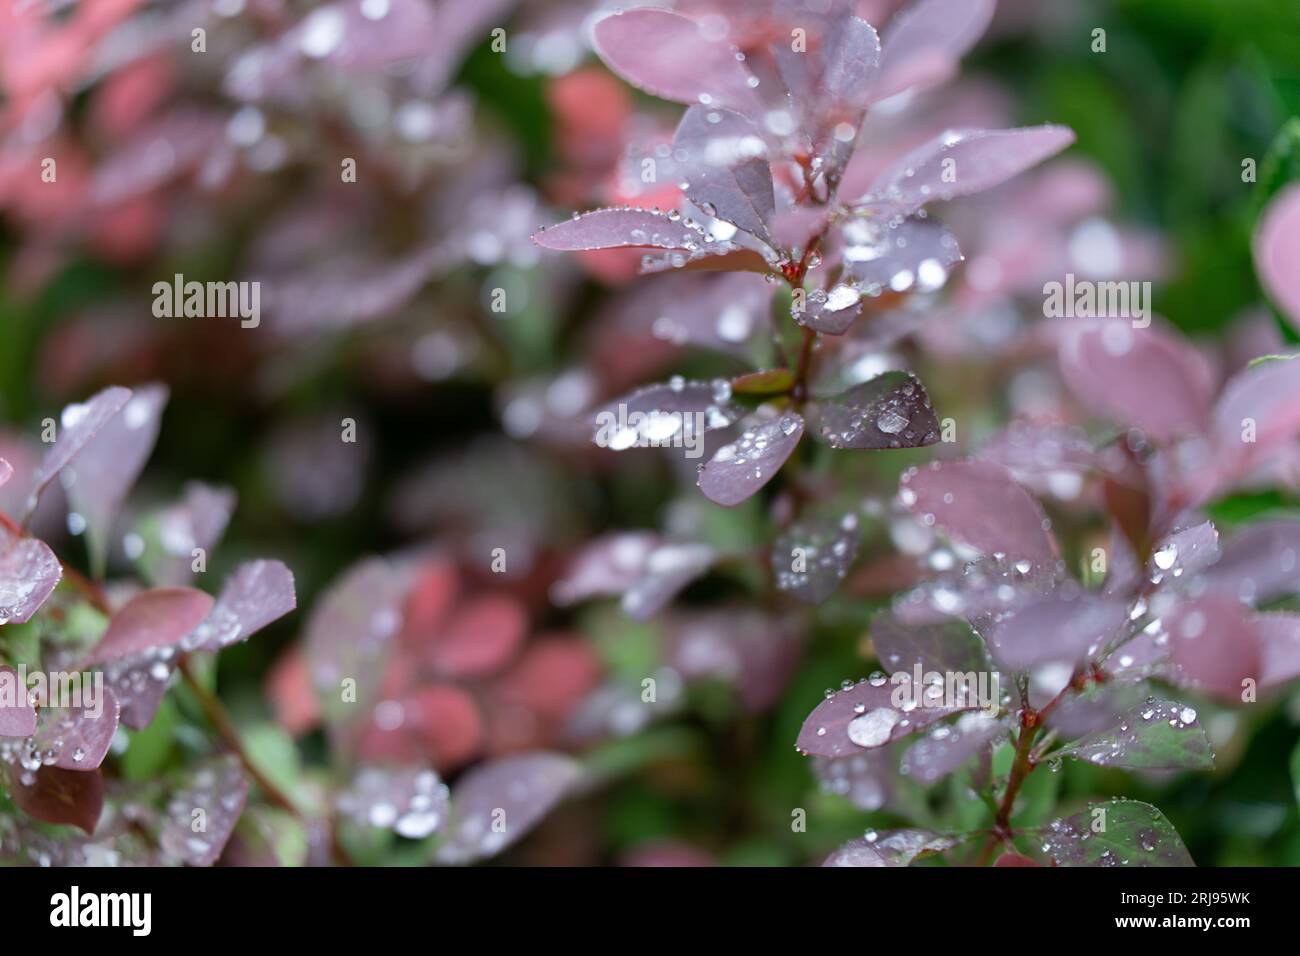 Eine Nahaufnahme von nassrotem Laub mit Wassertropfen an den Blättern und Stängeln Stockfoto